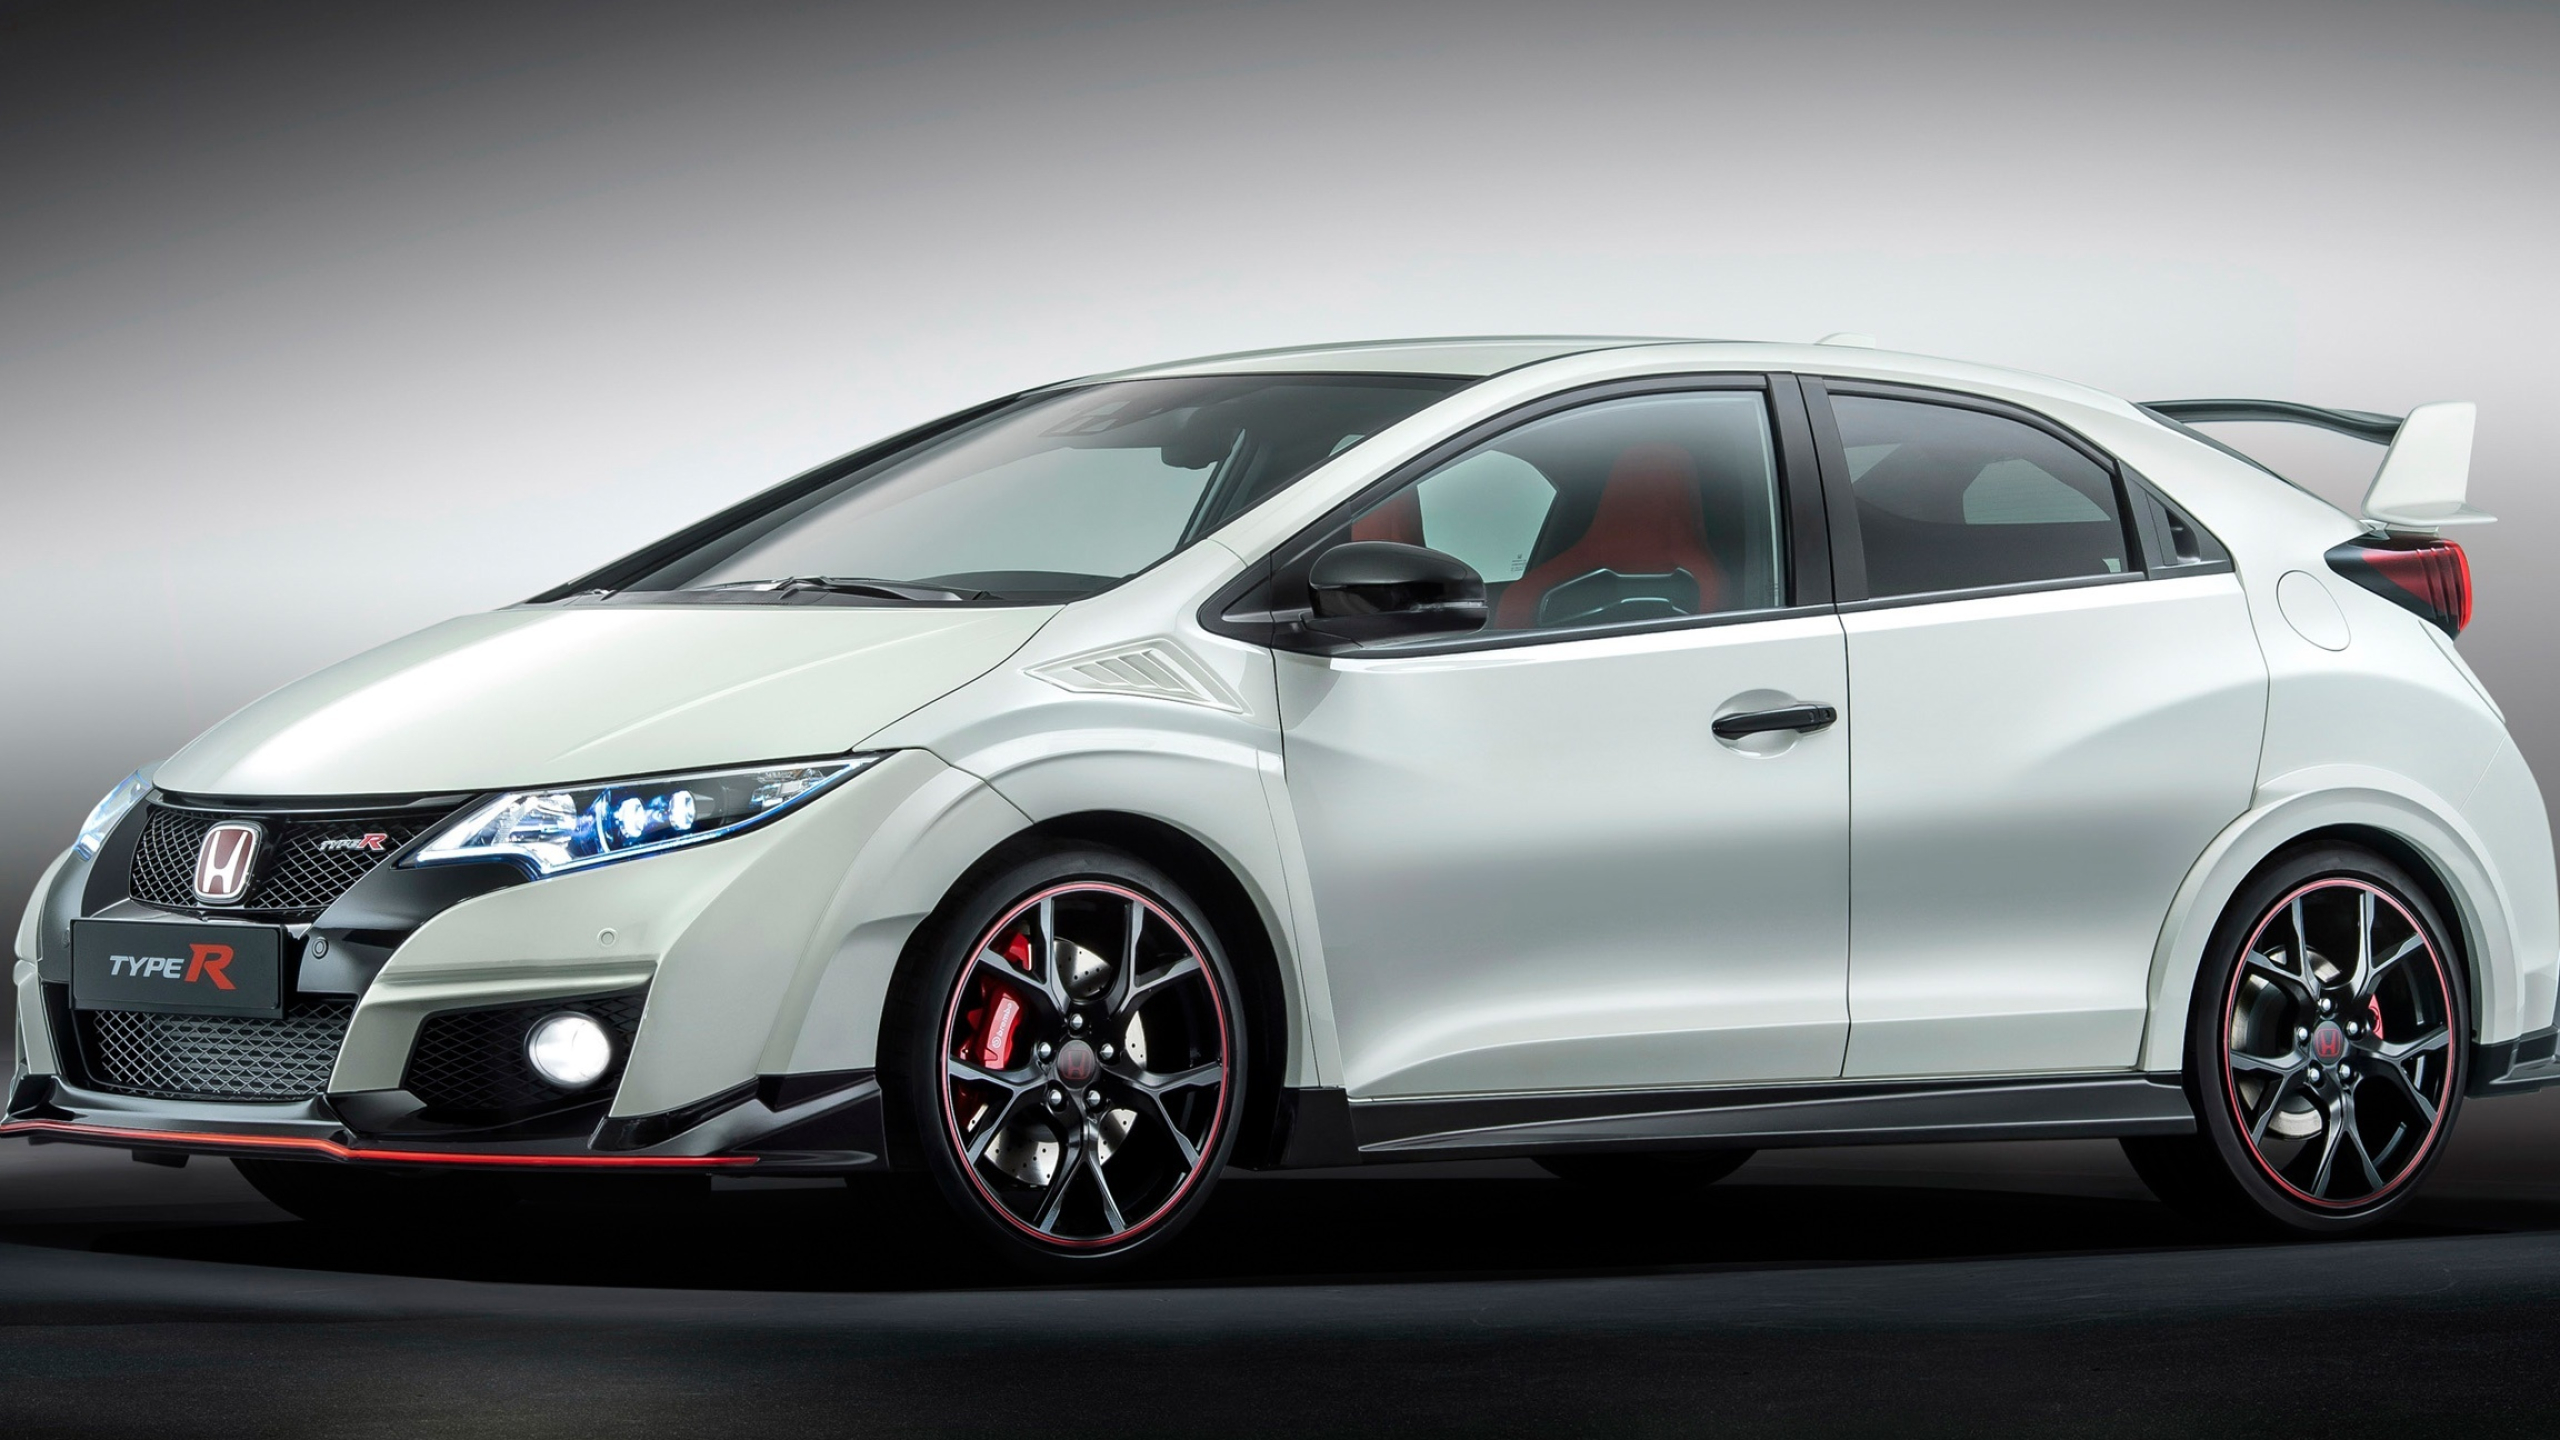 2016 Honda Civic wallpaper, Automotive beauty, Modern design, High-speed elegance, 2560x1440 HD Desktop